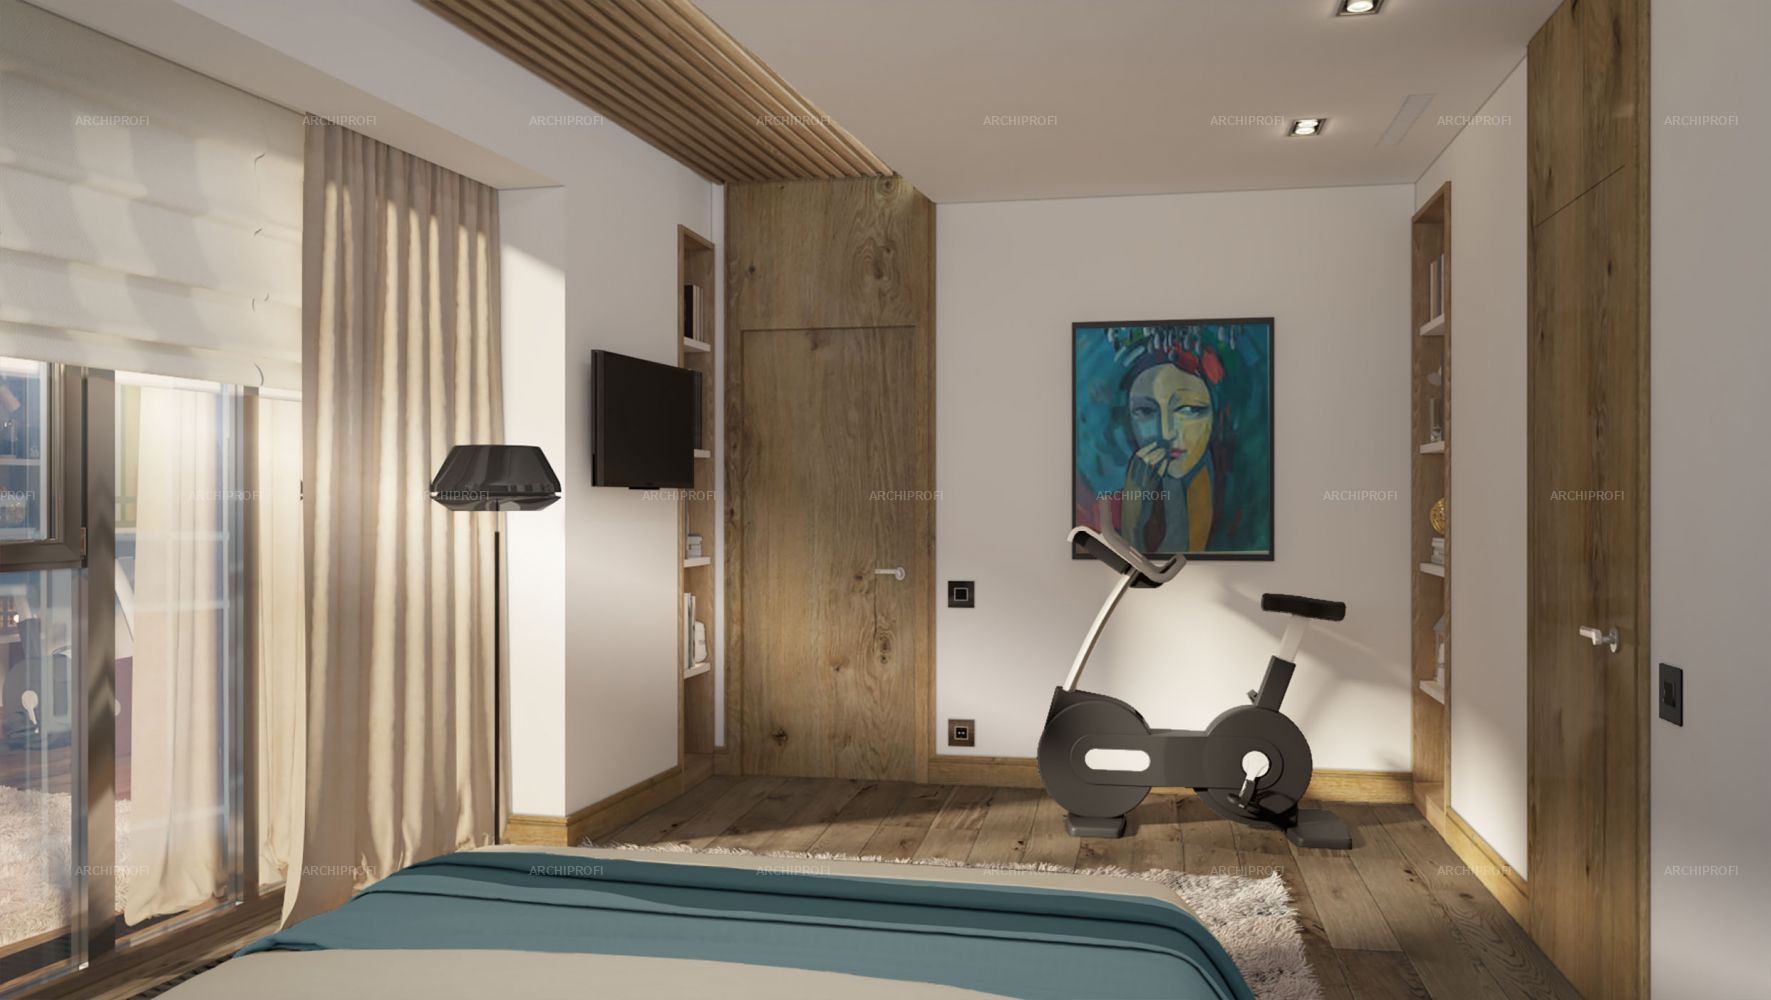 3D интерьера, Спальня площадью 18 кв.м. в стиле Современная. Проект Sky House - Sky House, Автор проекта: Дизайнеры Александра Останкова